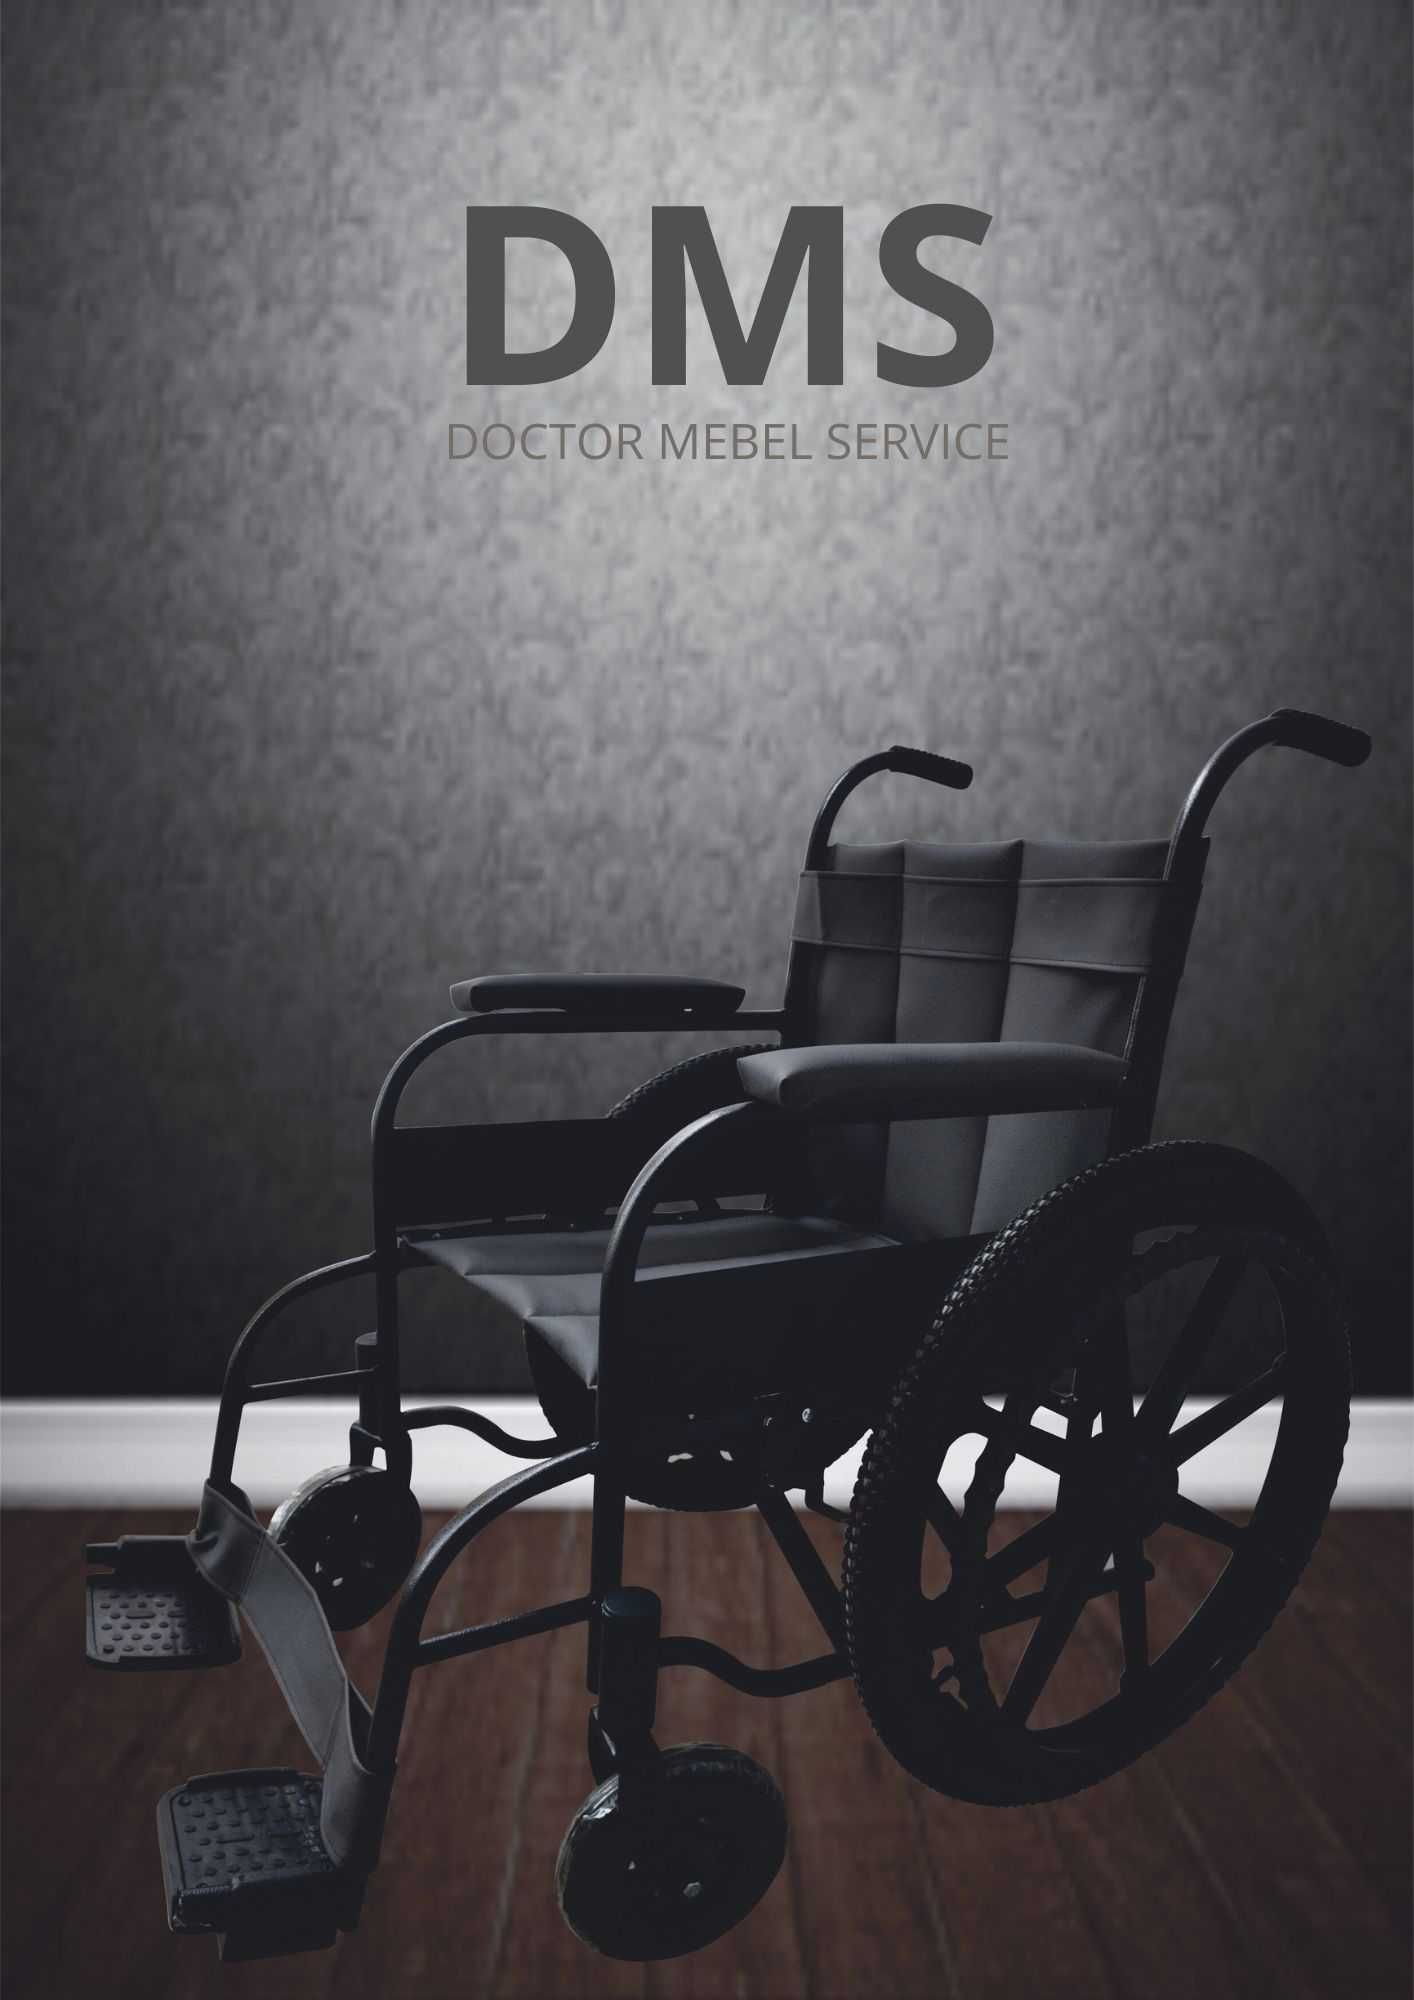 Инвалидые коляска для всех